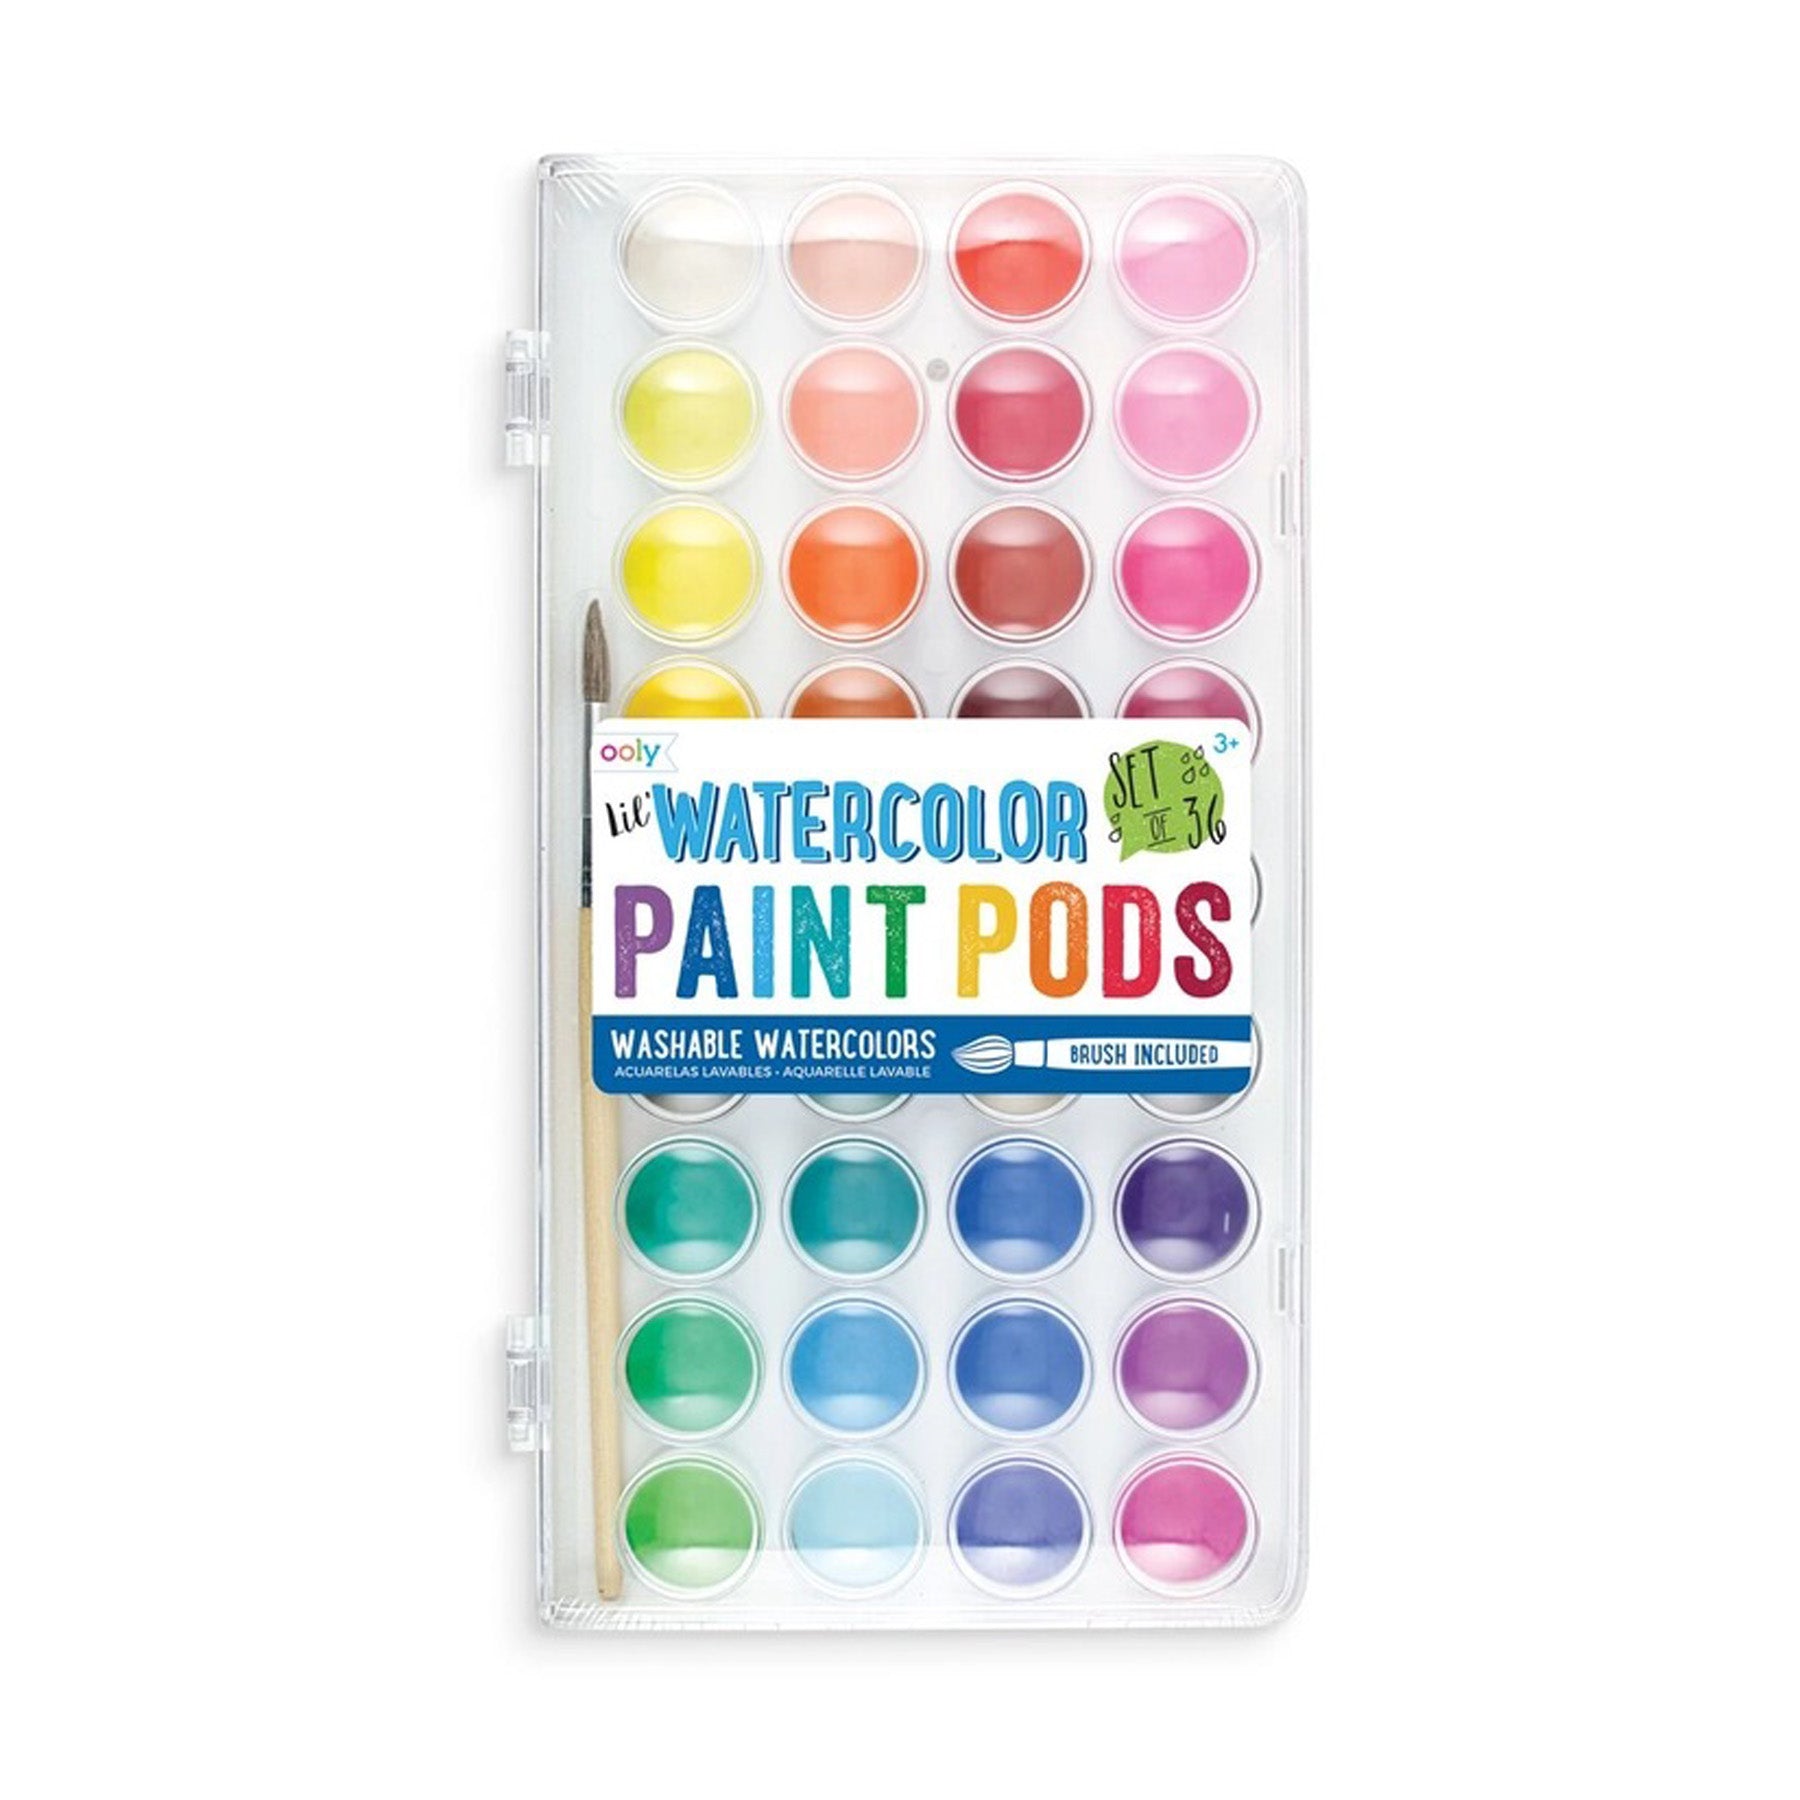 Lil’ Paint Pods Watercolor Paint Set